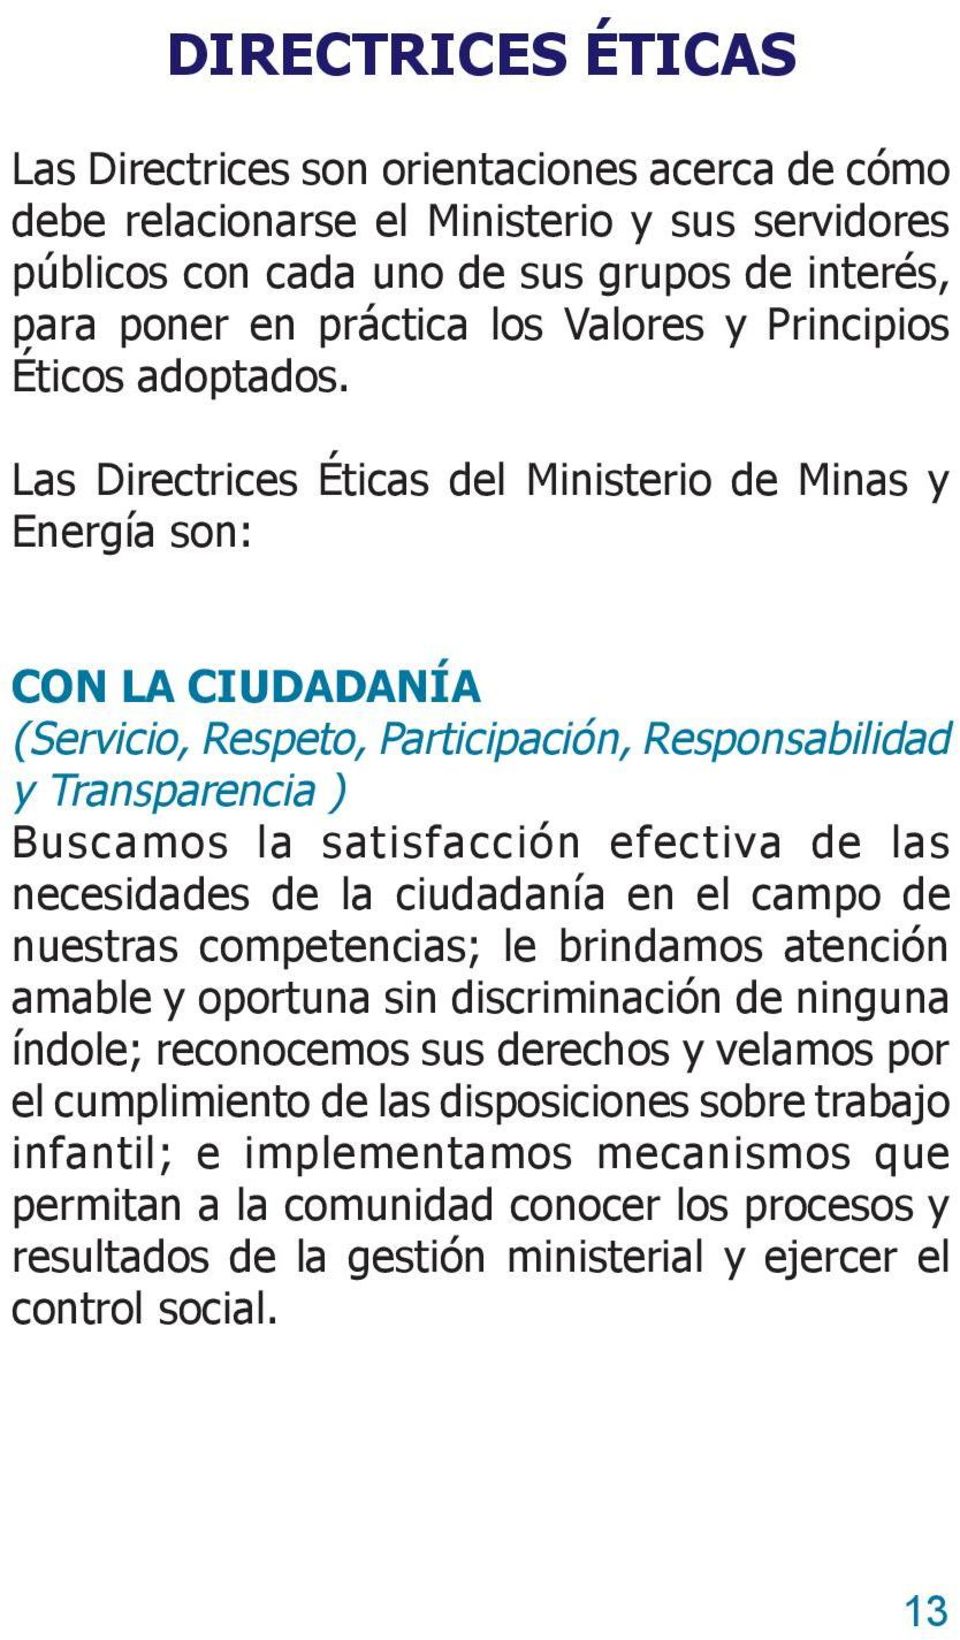 Las Directrices Éticas del Ministerio de Minas y Energía son: CON LA CIUDADANÍA (Servicio, Respeto, Participación, Responsabilidad y Transparencia ) Buscamos la satisfacción efectiva de las